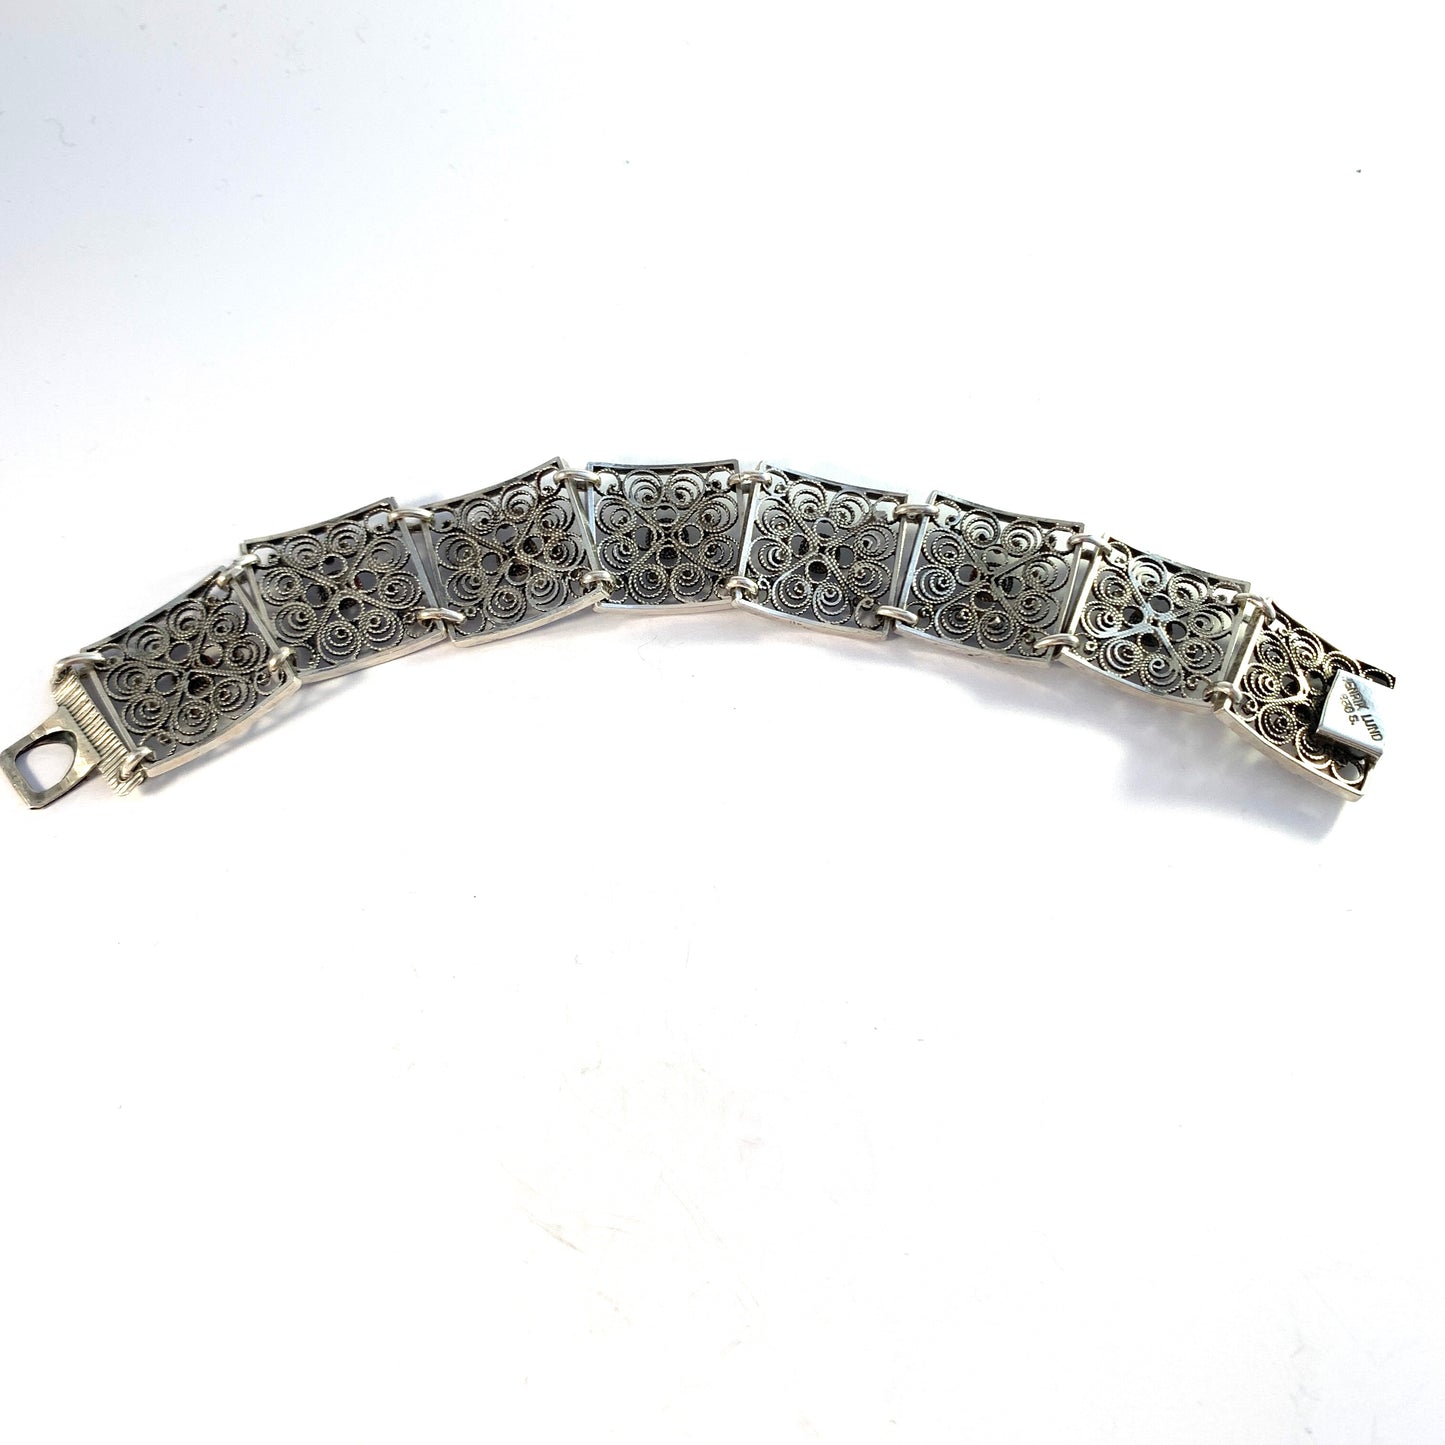 Henrik Lund, Norway c 1930-40s. Vintage Solid Silver Link Bracelet. Signed